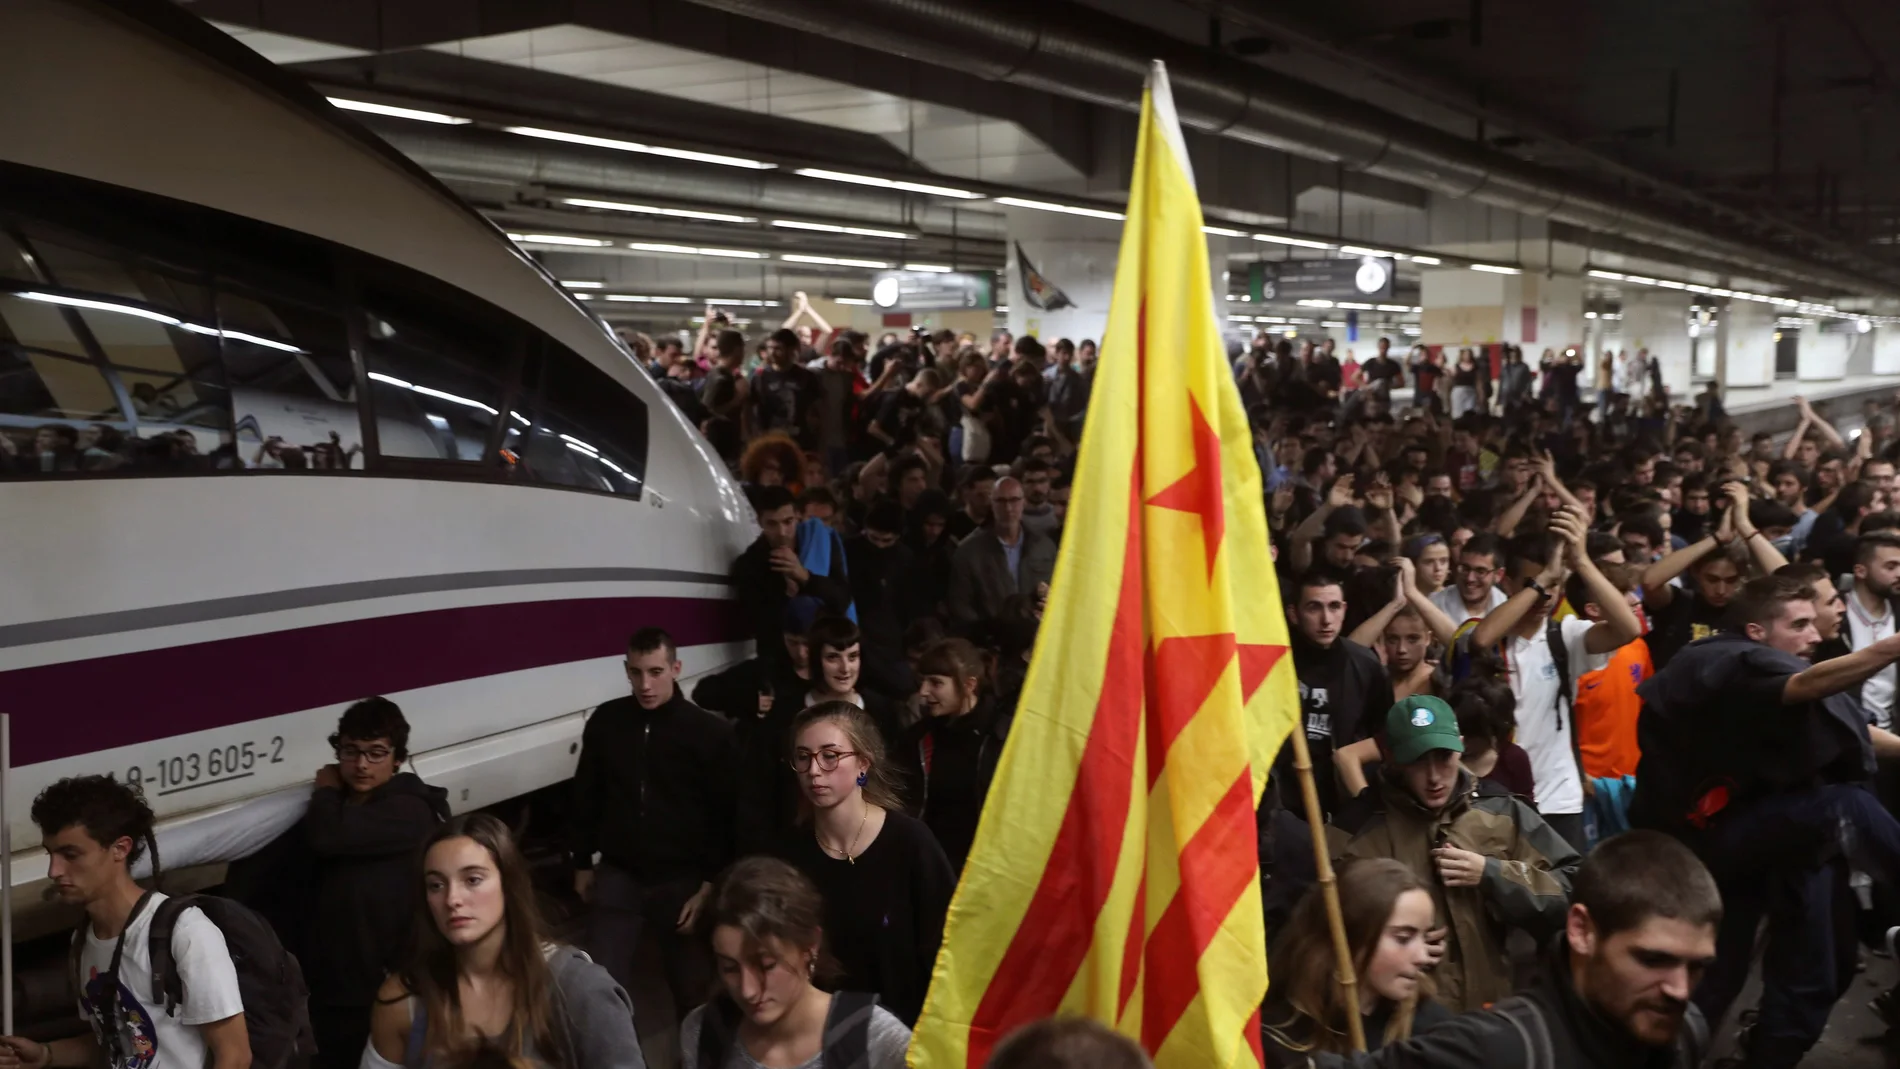 Los manifestantes ocuparon la estación de Barcelona-Sants